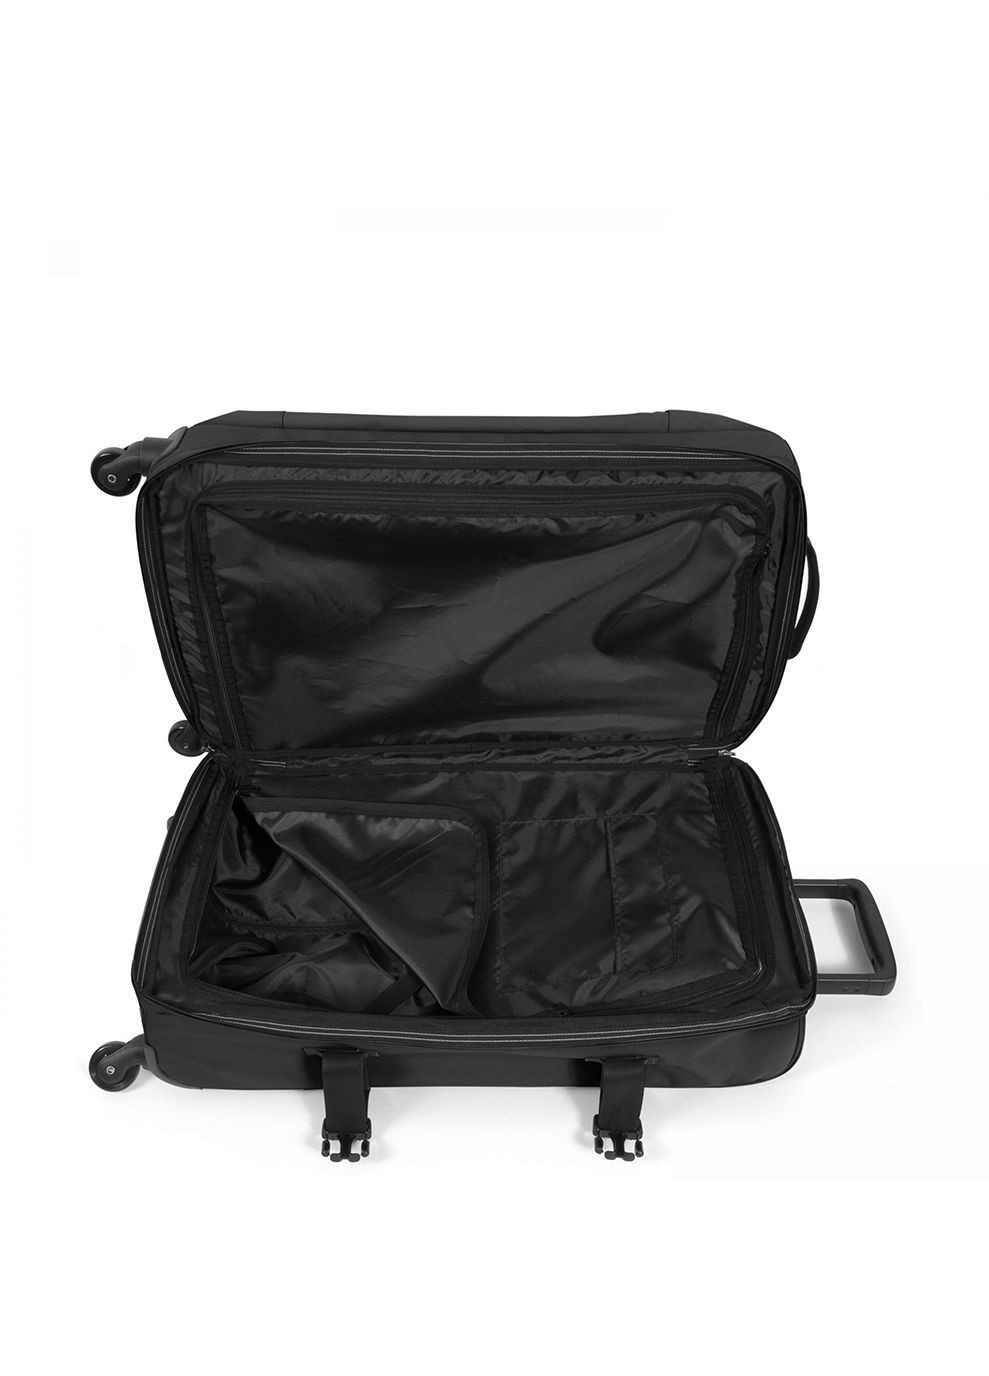 Малый чемодан TRANS4 S Черный Eastpak (268833105)